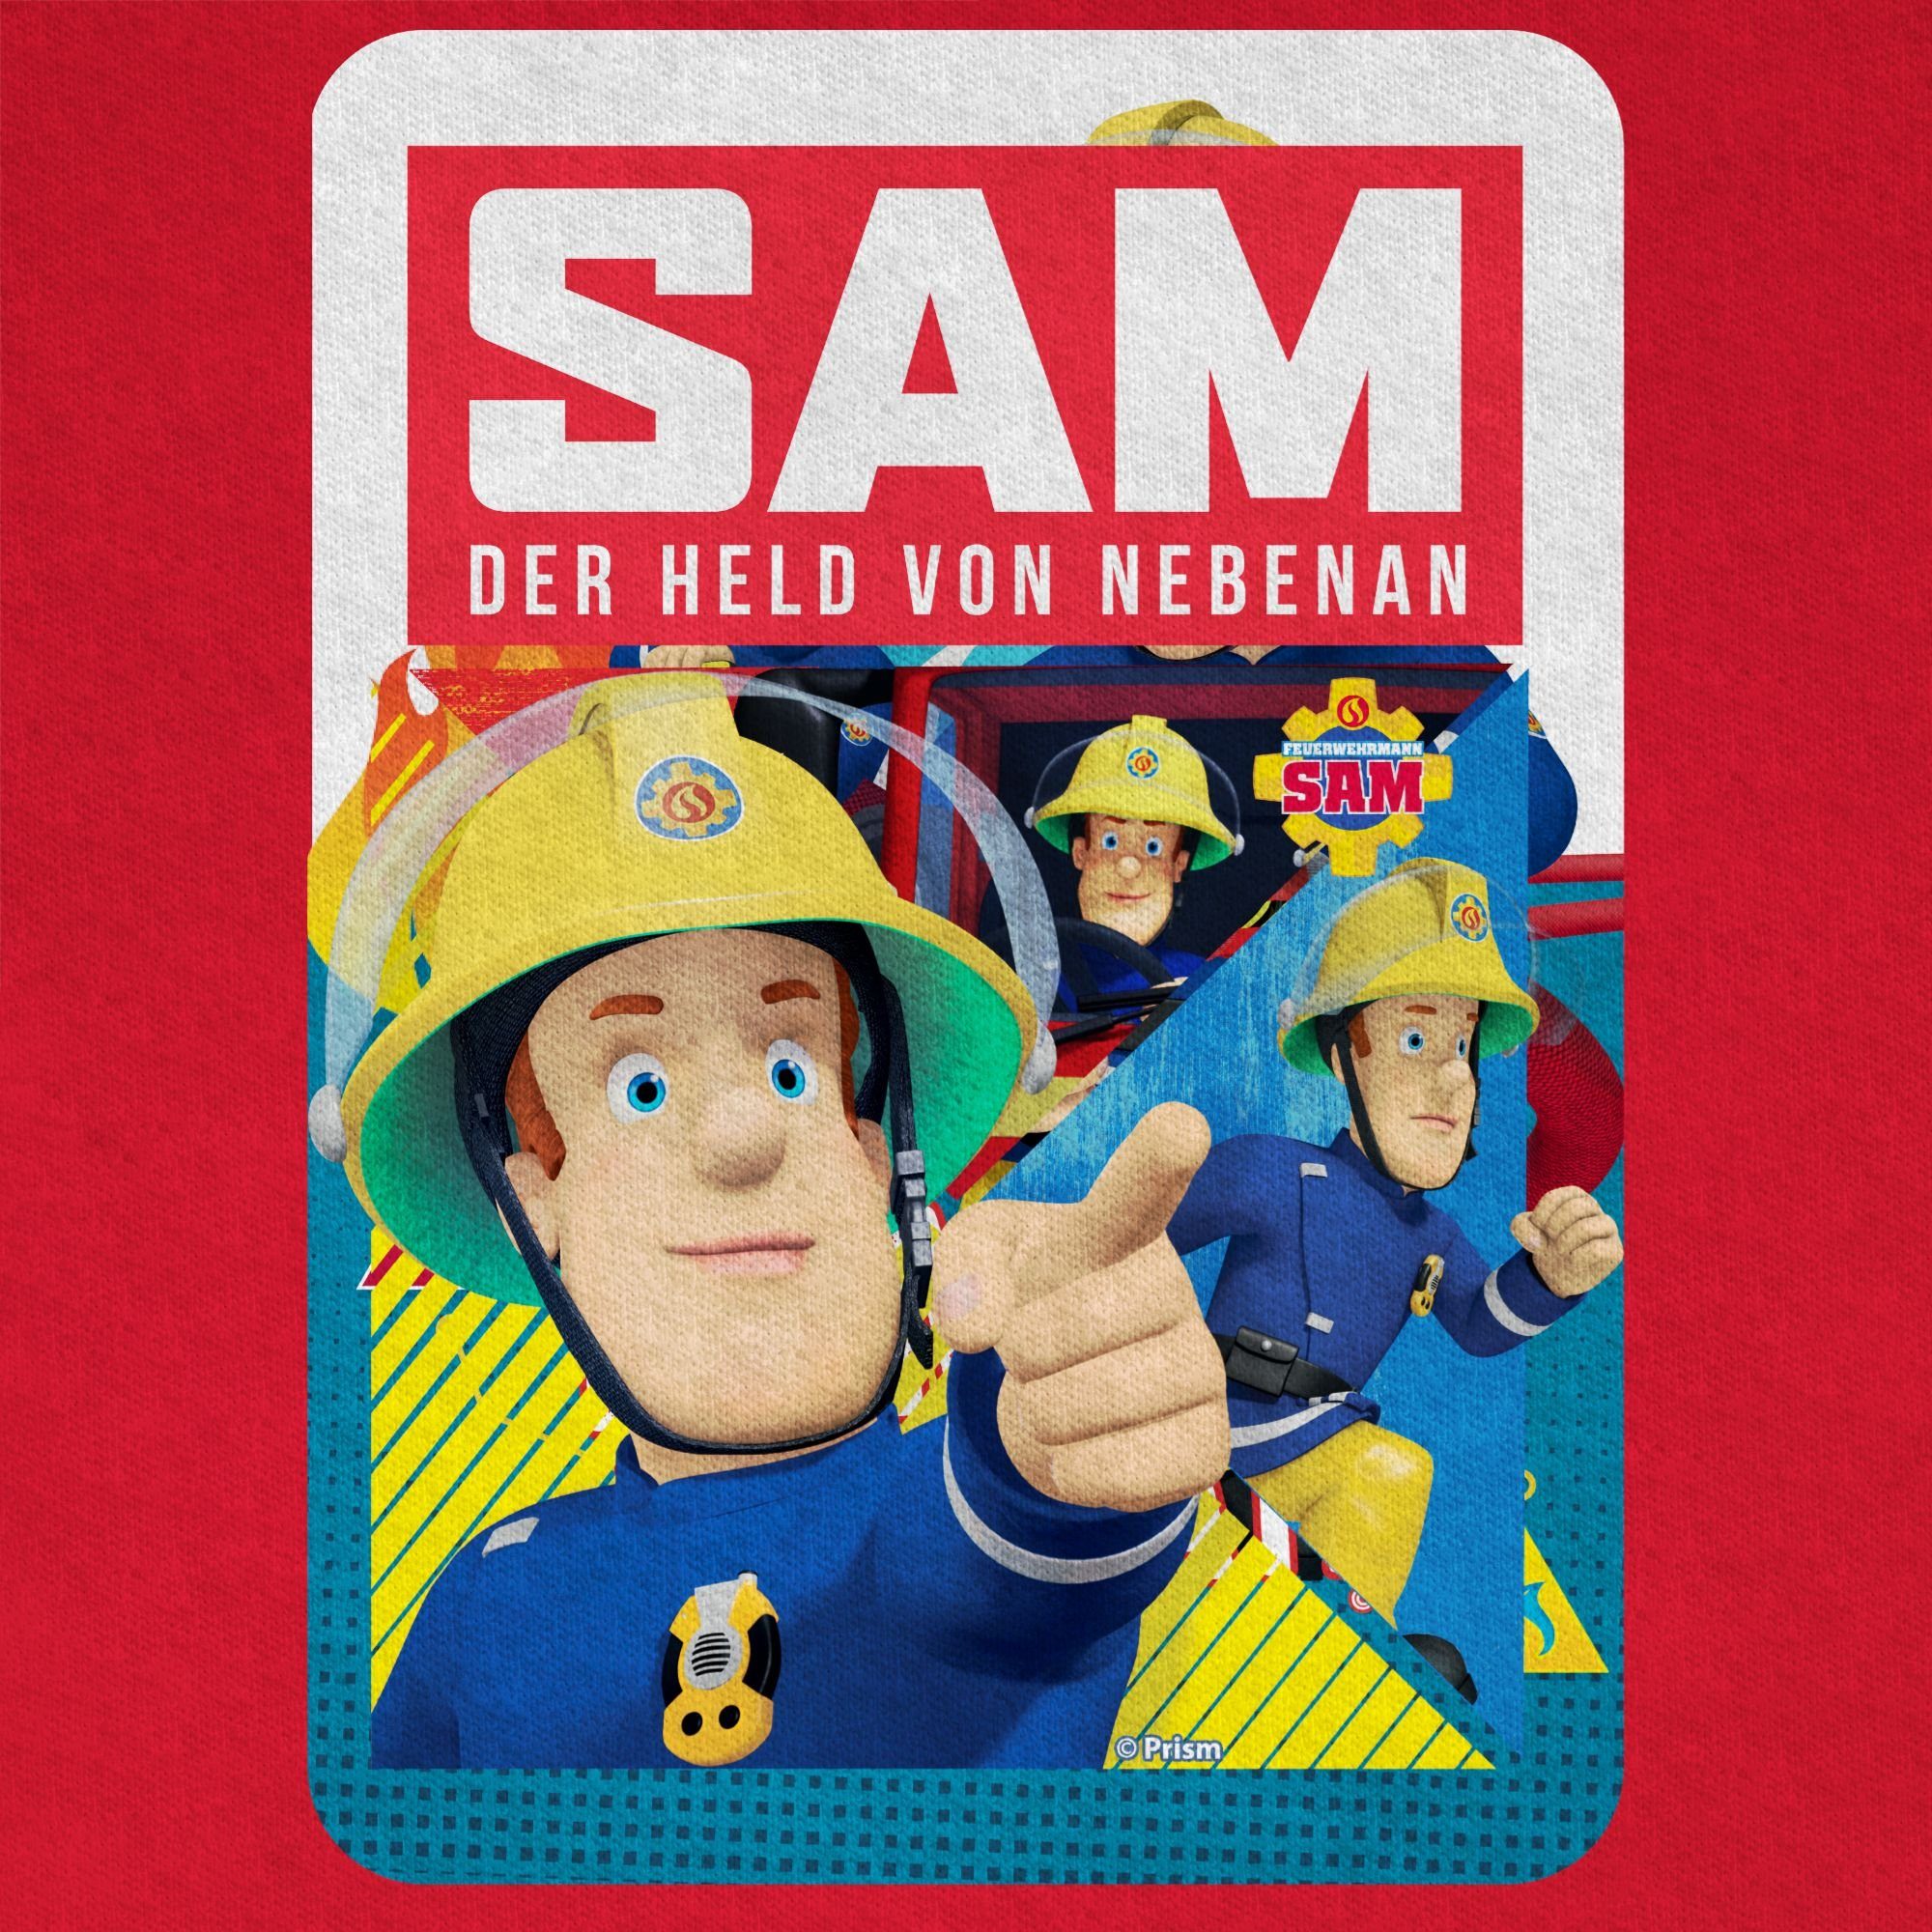 Shirtracer T-Shirt Held der Sam 01 Jungen Rot Sam Feuerwehrmann nebenan von